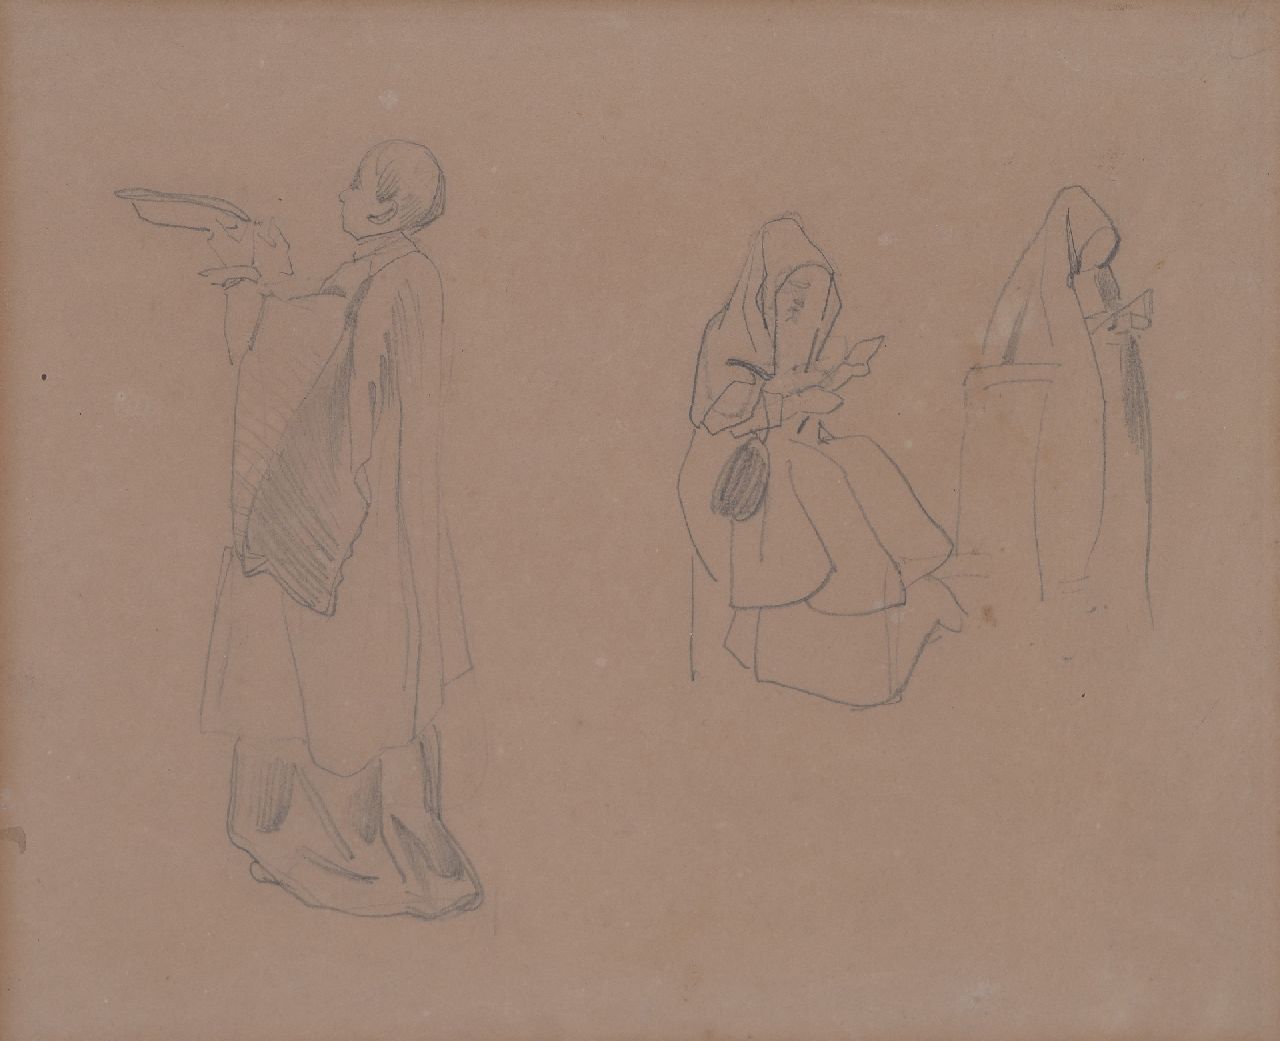 Bosboom J.  | Johannes Bosboom, Studie von Mönche und Nonnen, Bleistift auf Papier 20,8 x 26,1 cm